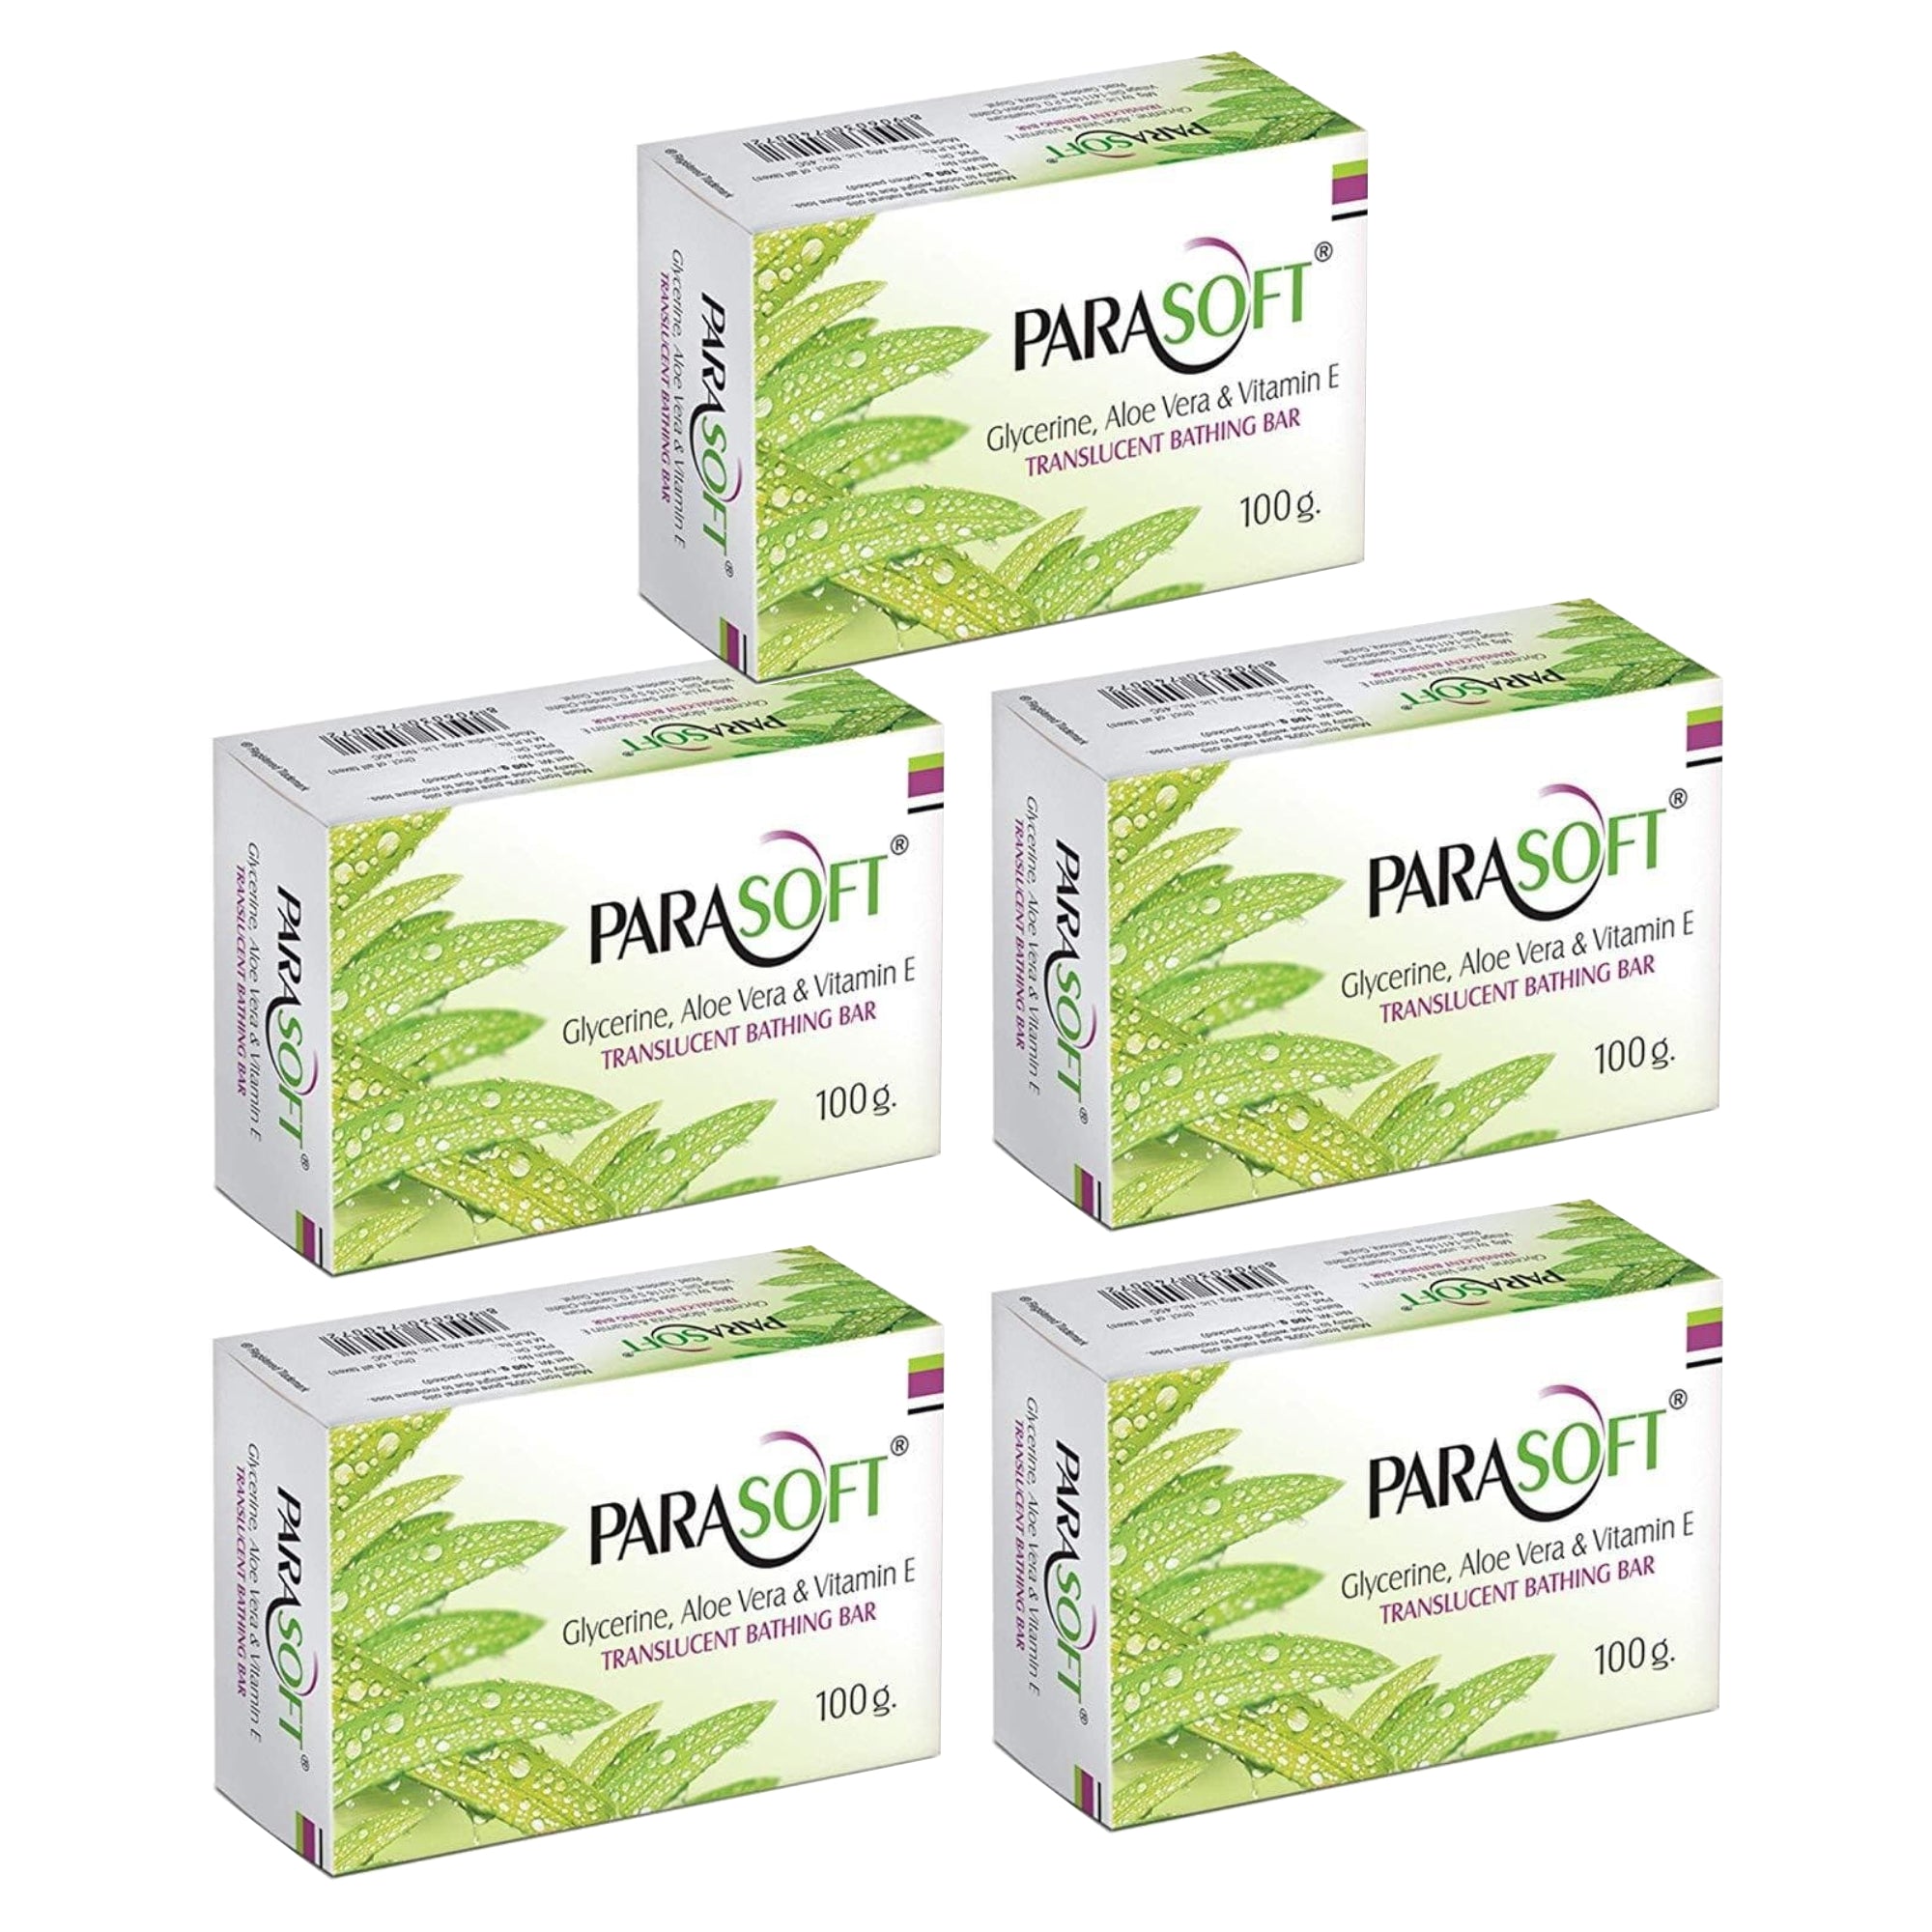 Shoprythm Dry,Parasoft Pack of 5 Salve Parasoft Soap 100g